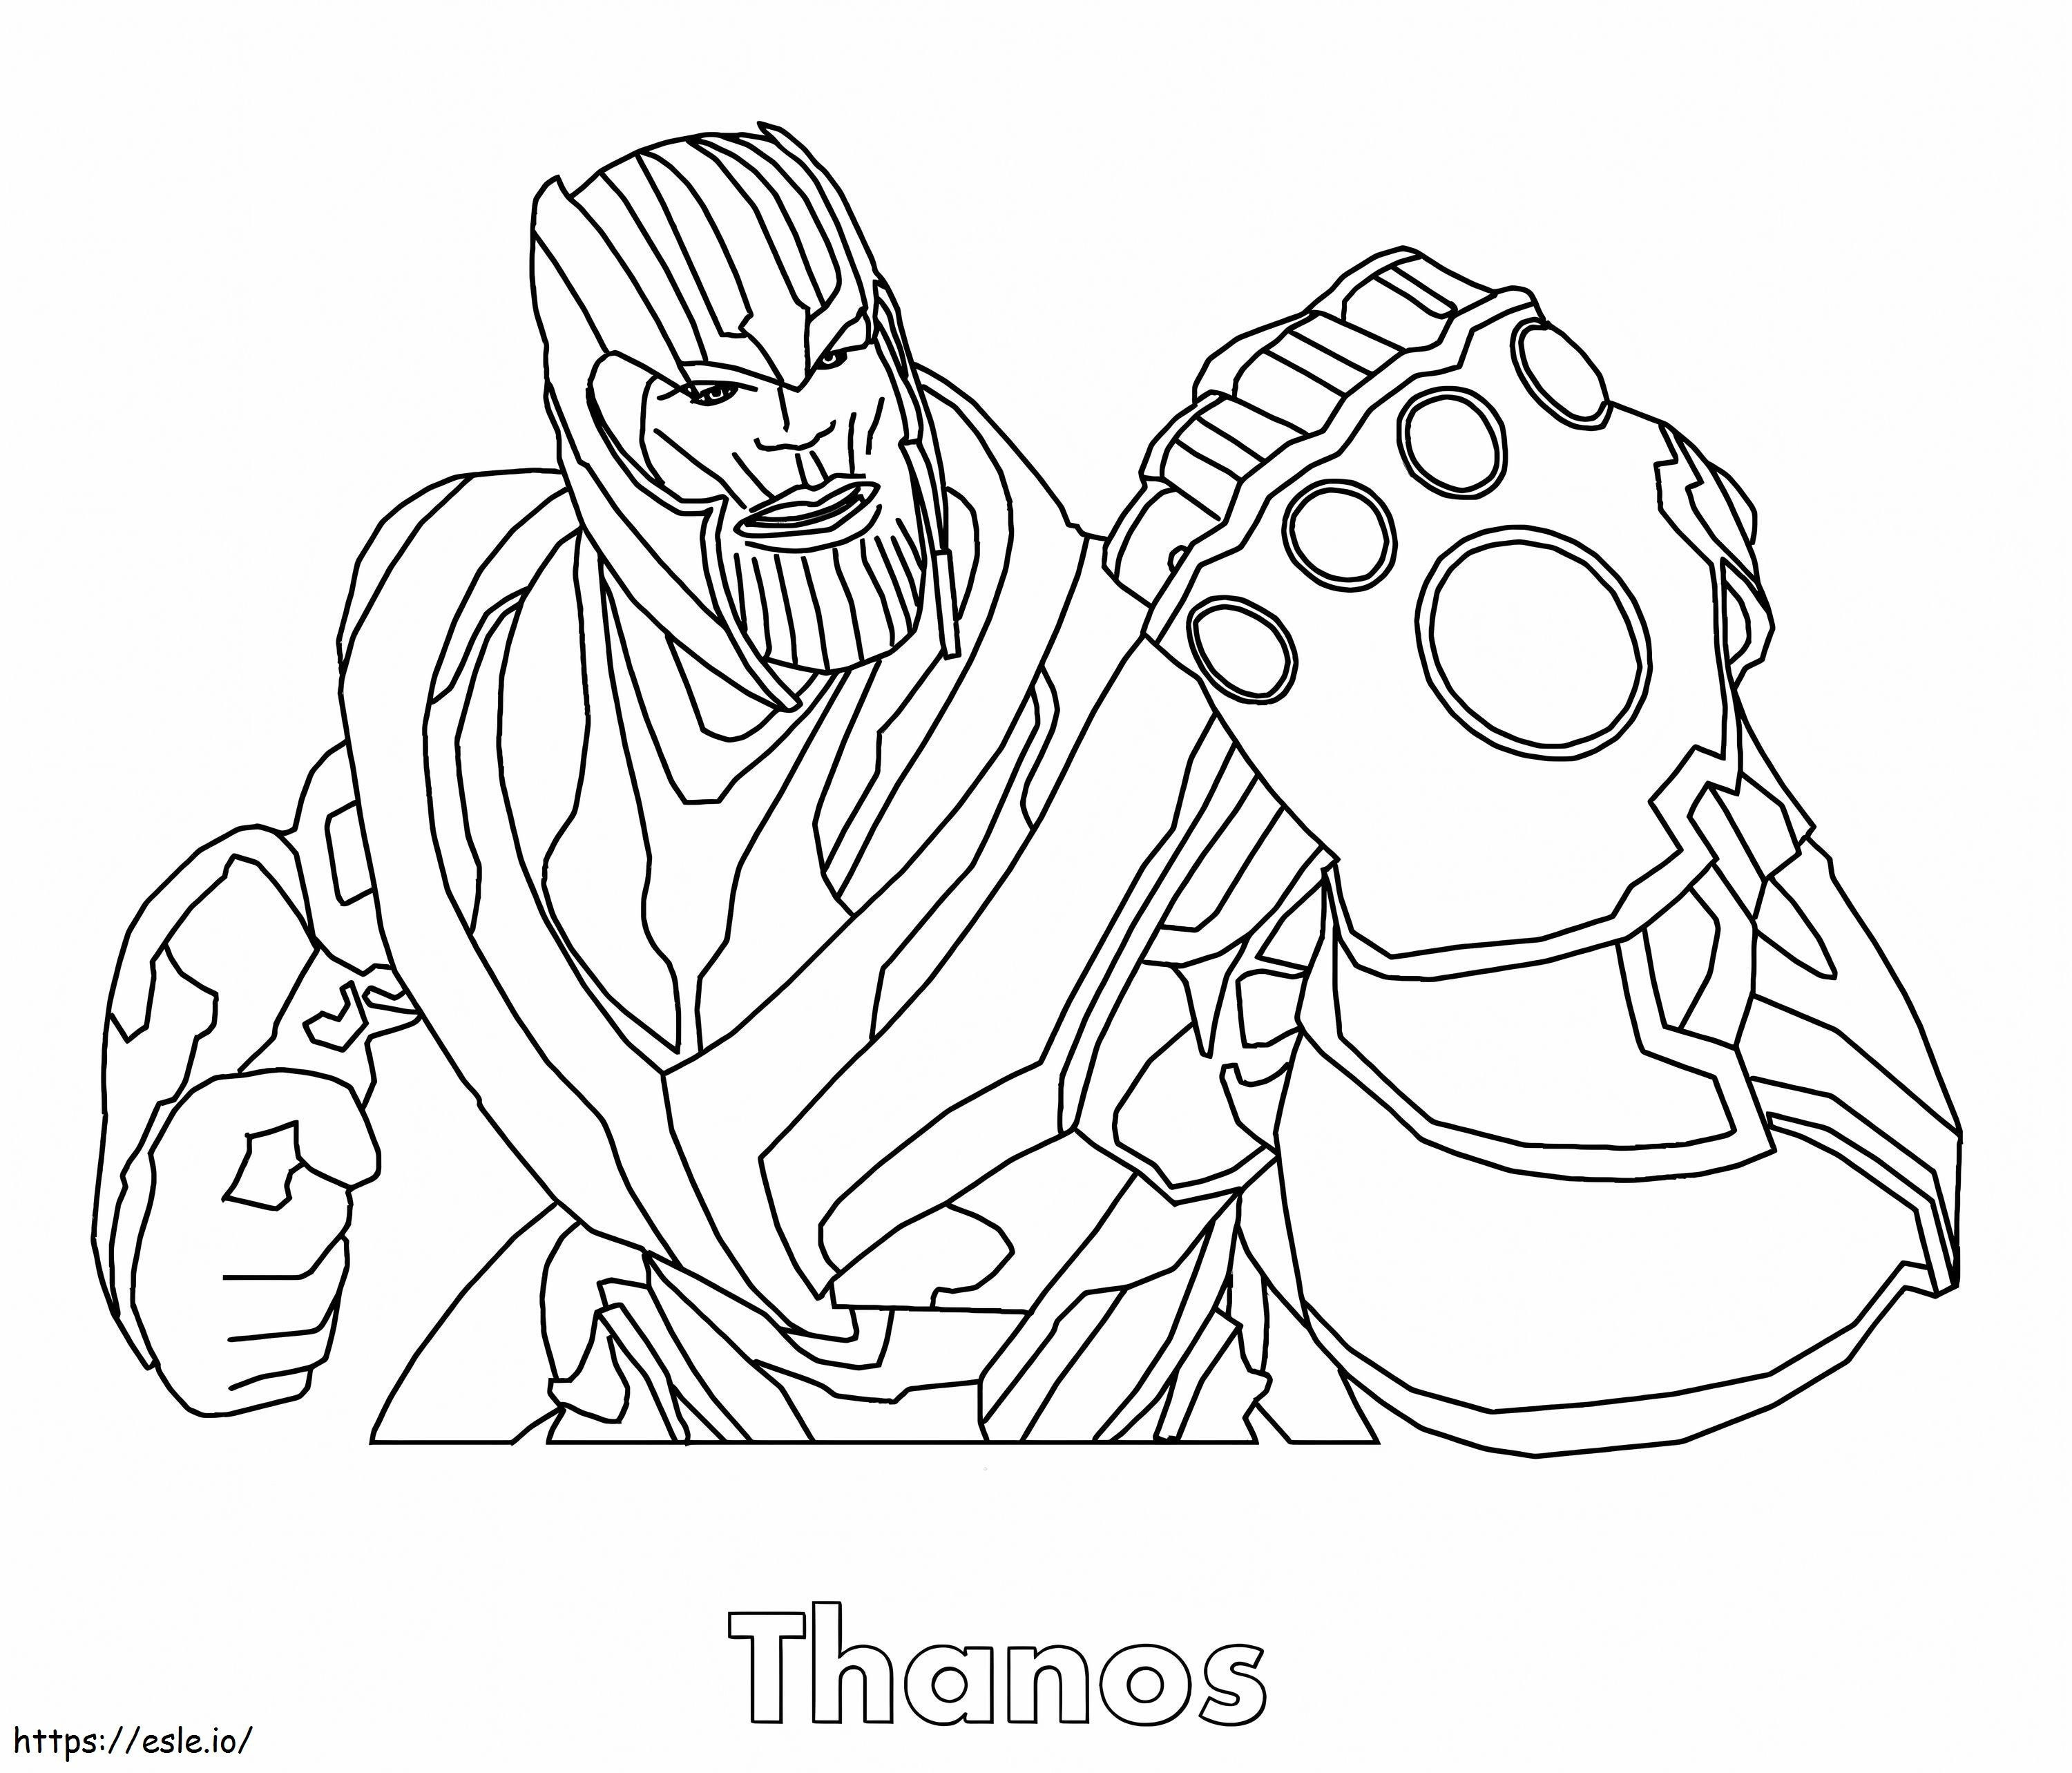 Wściekły Thanos używający Rękawicy Nieskończoności kolorowanka